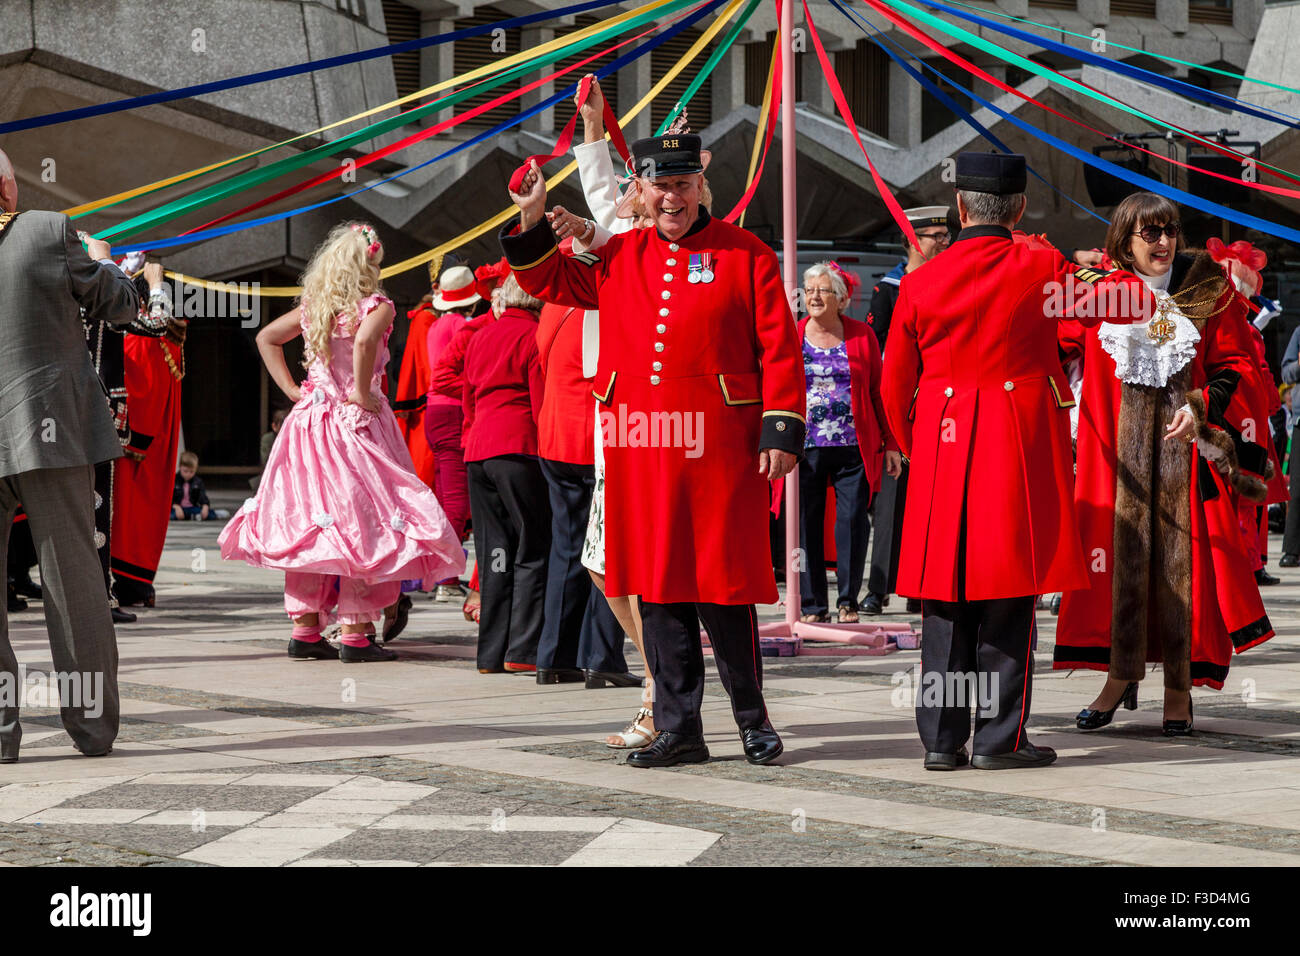 Chelsea retraités blague avec la foule tout en prenant part à une danse traditionnelle Maypole, Harvest Festival, London, UK Banque D'Images